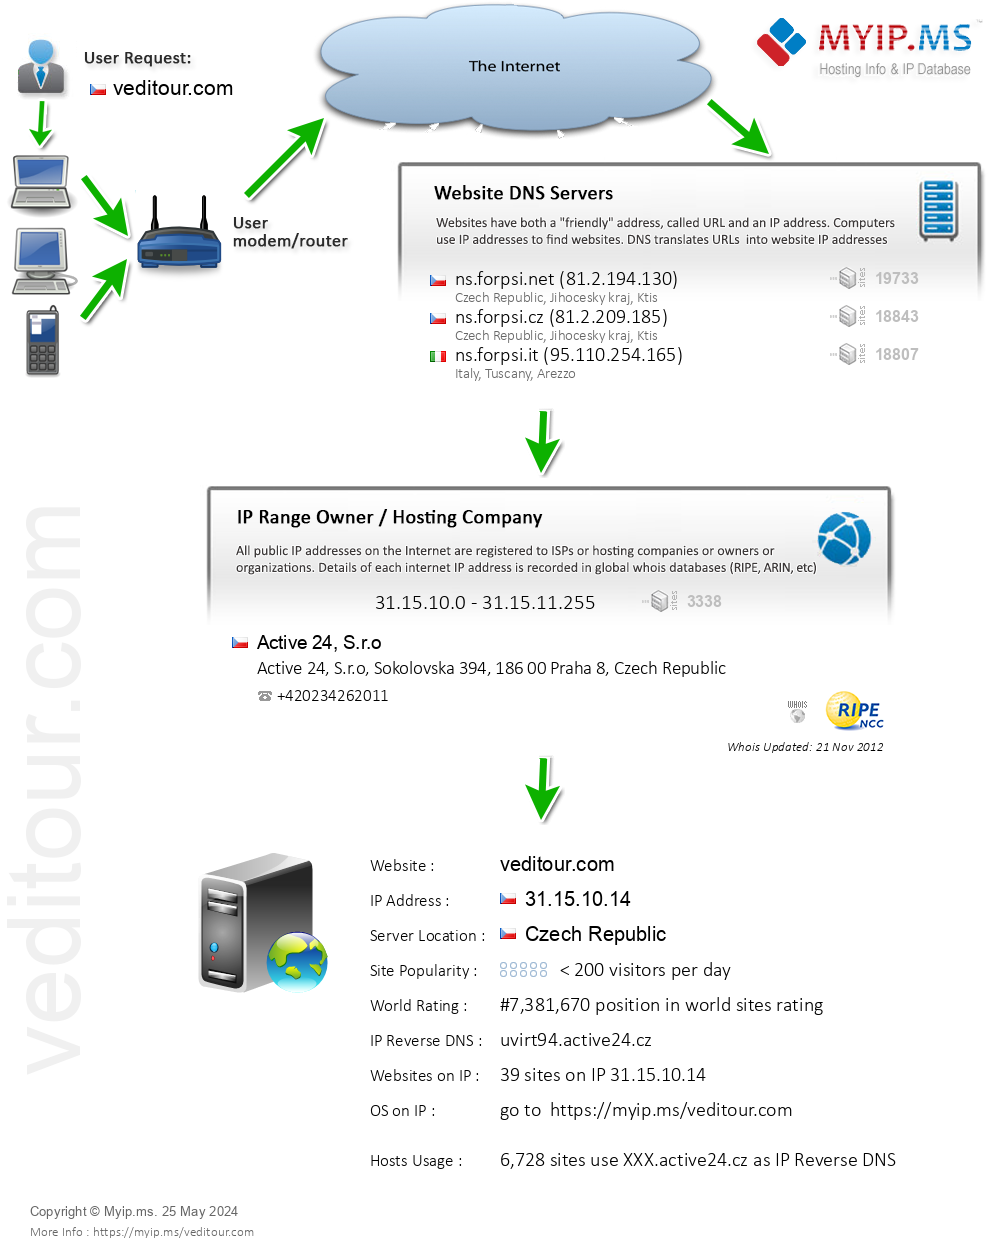 Veditour.com - Website Hosting Visual IP Diagram